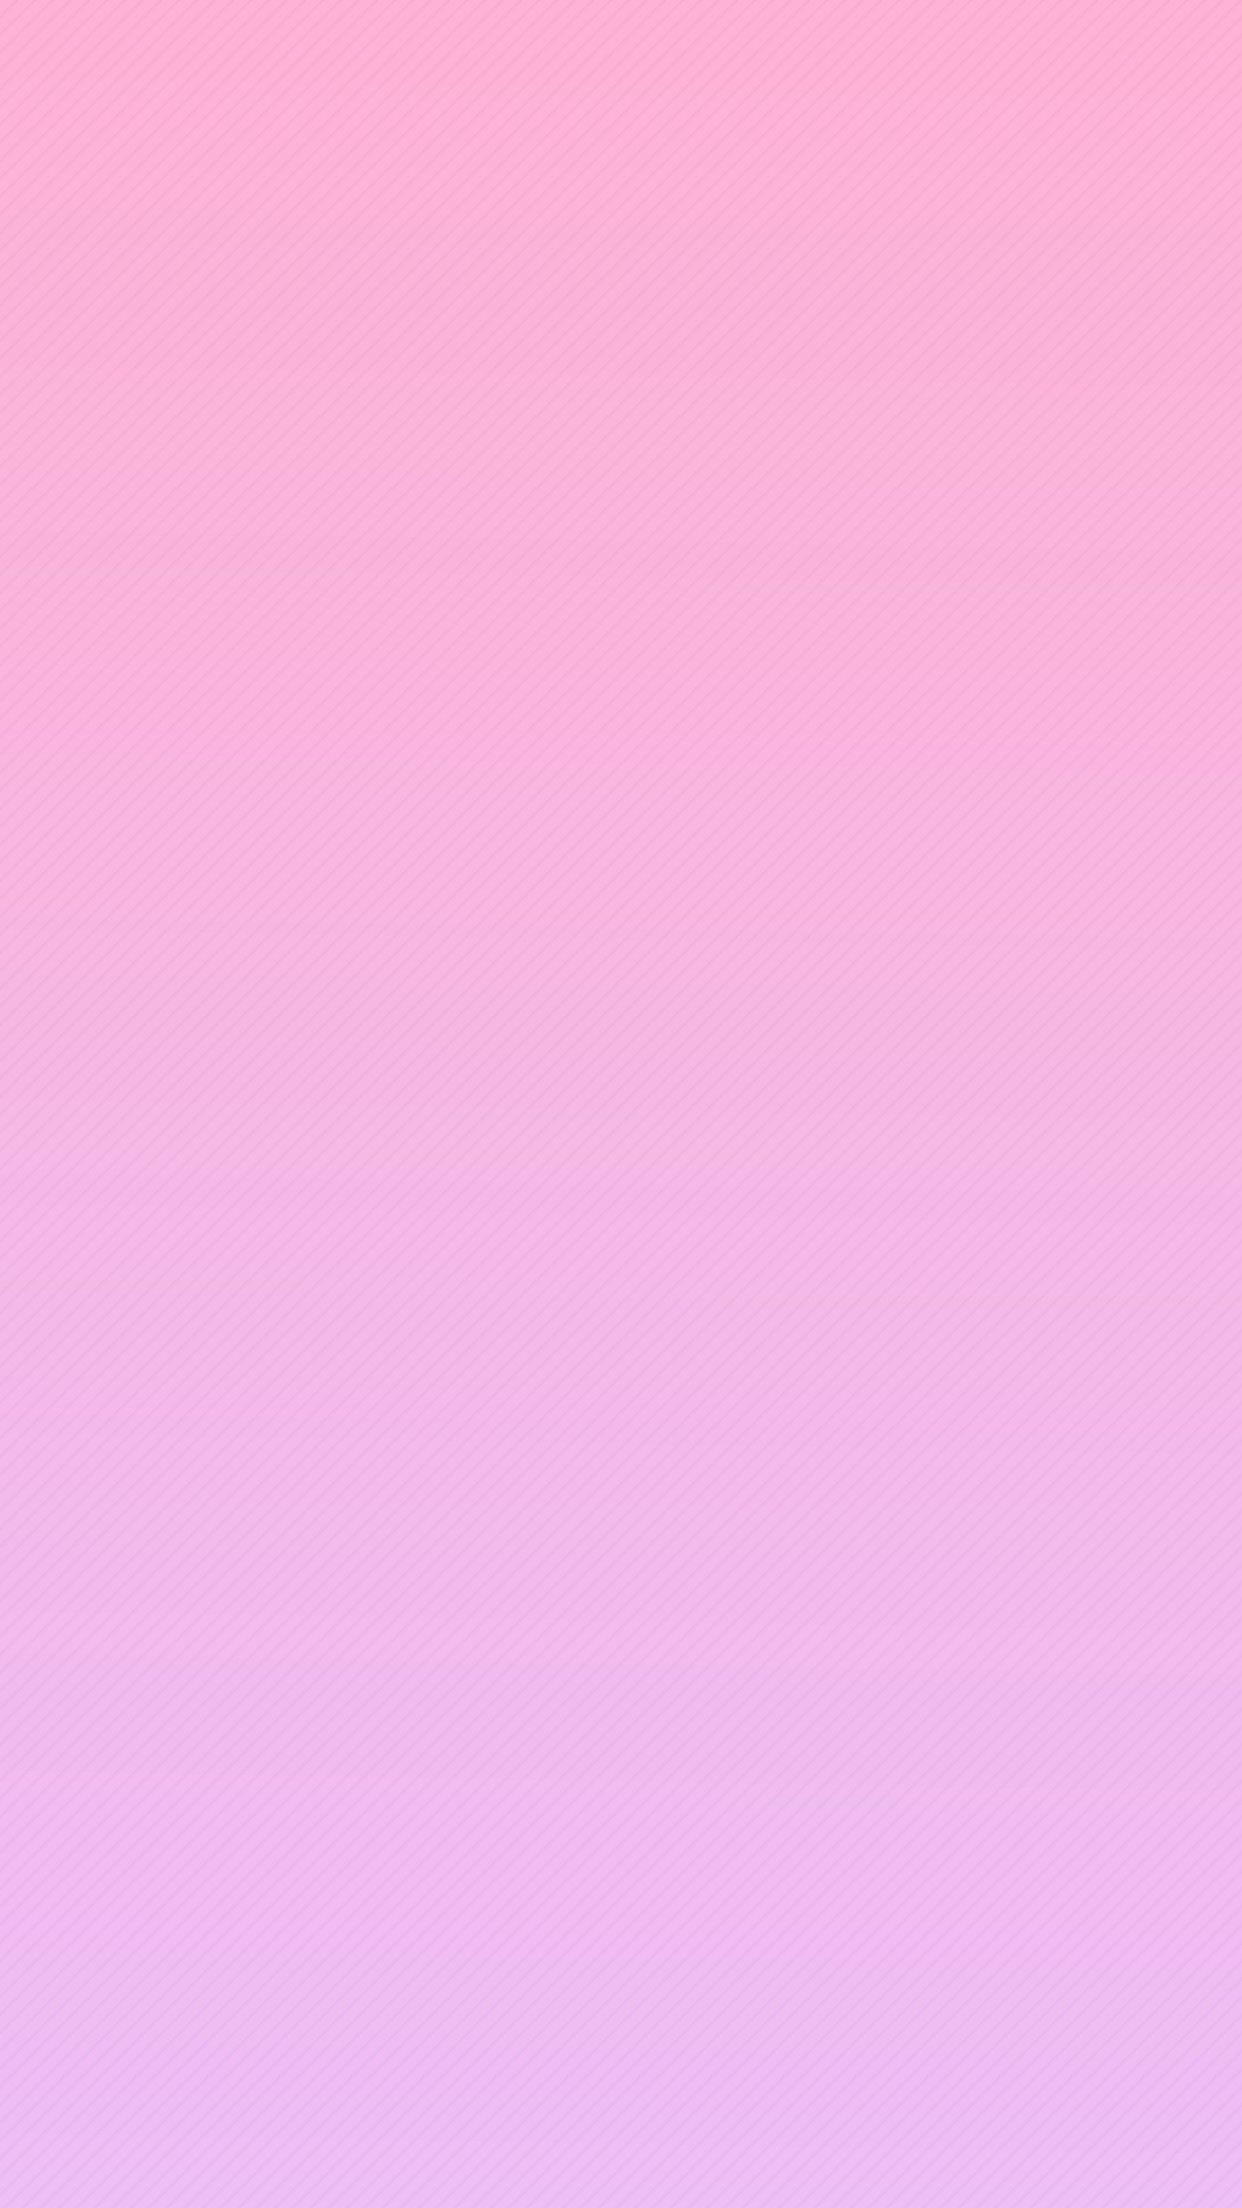 [55+] Images of Pink Wallpapers | WallpaperSafari